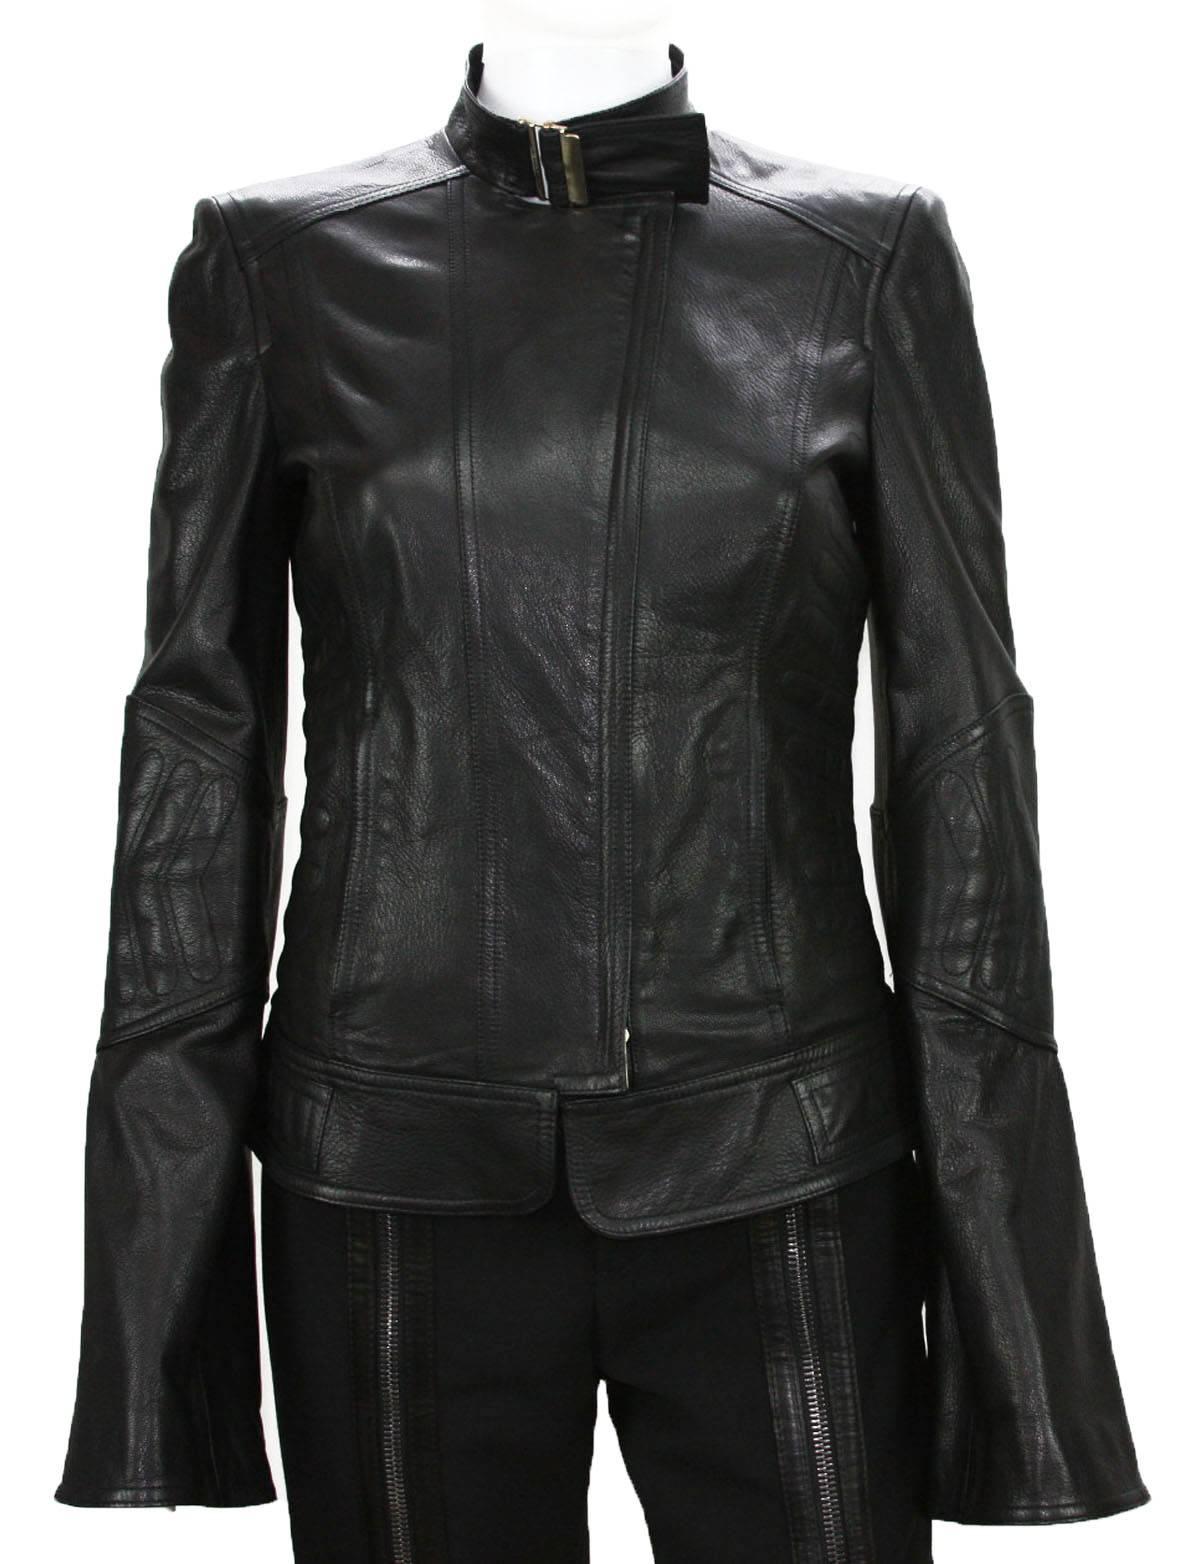 Noir Veste noire à chevrons en cuir Tom Ford pour Gucci, collection 2004, taille IT 42 - US 6, neuve en vente